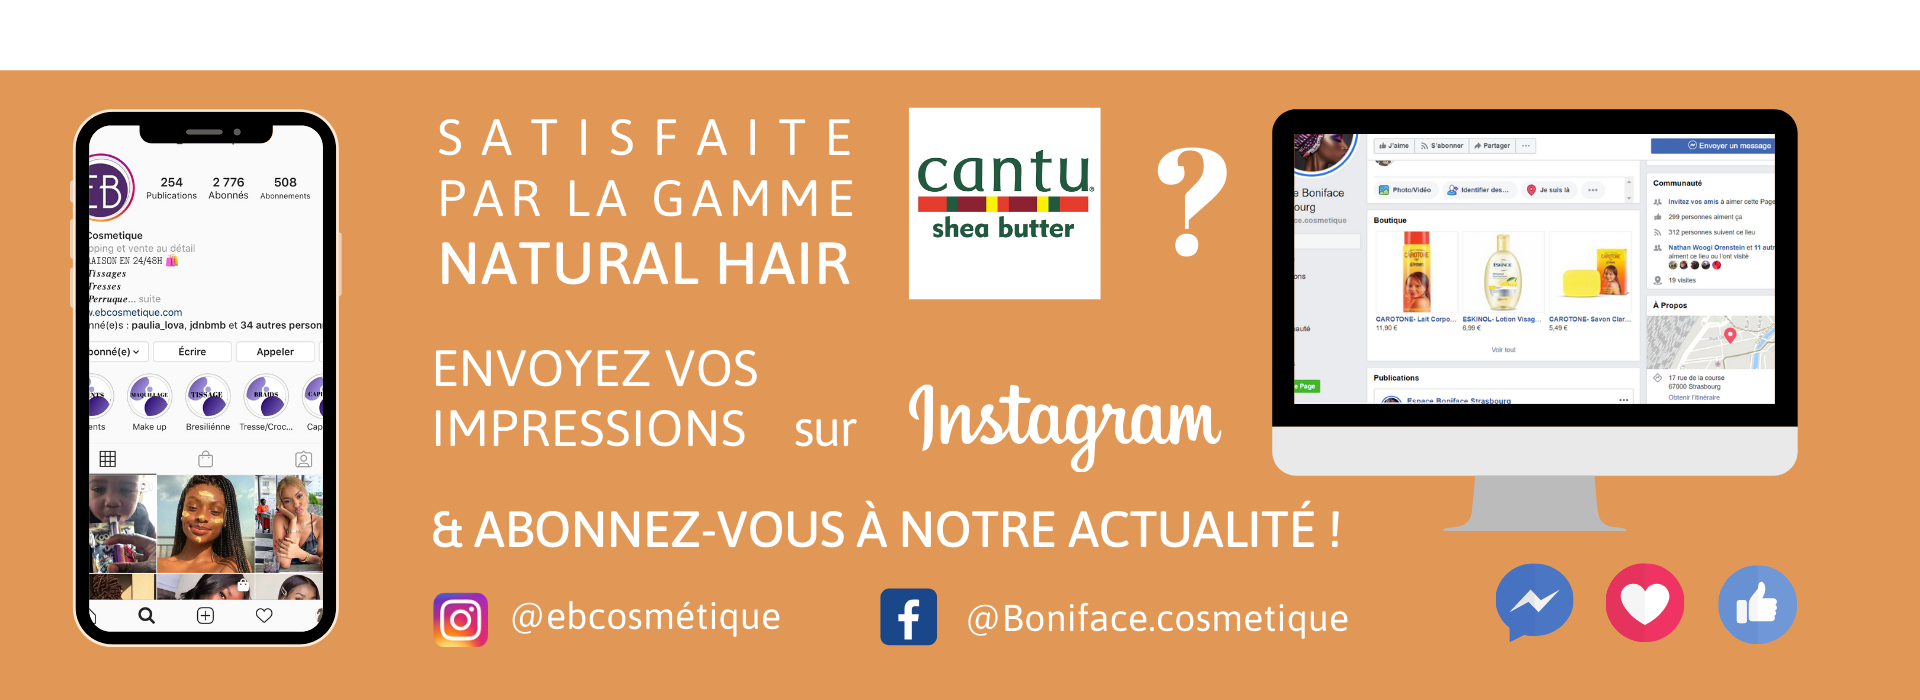 fiche produit ebcosmetique cantu shea butter natural hair come-back curl routine capillaire afro bouclé facebook instagram